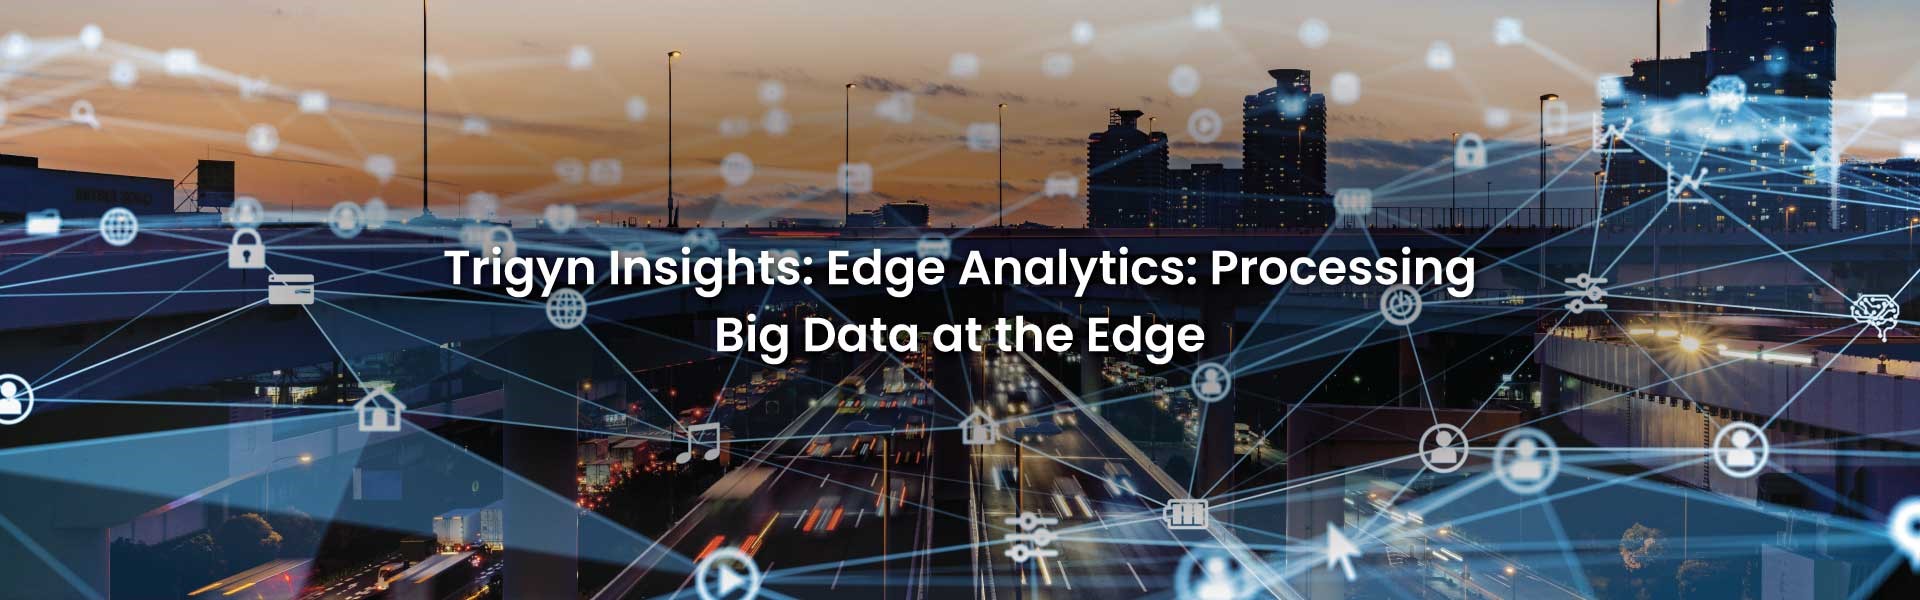 Processing Big Data at the Edge